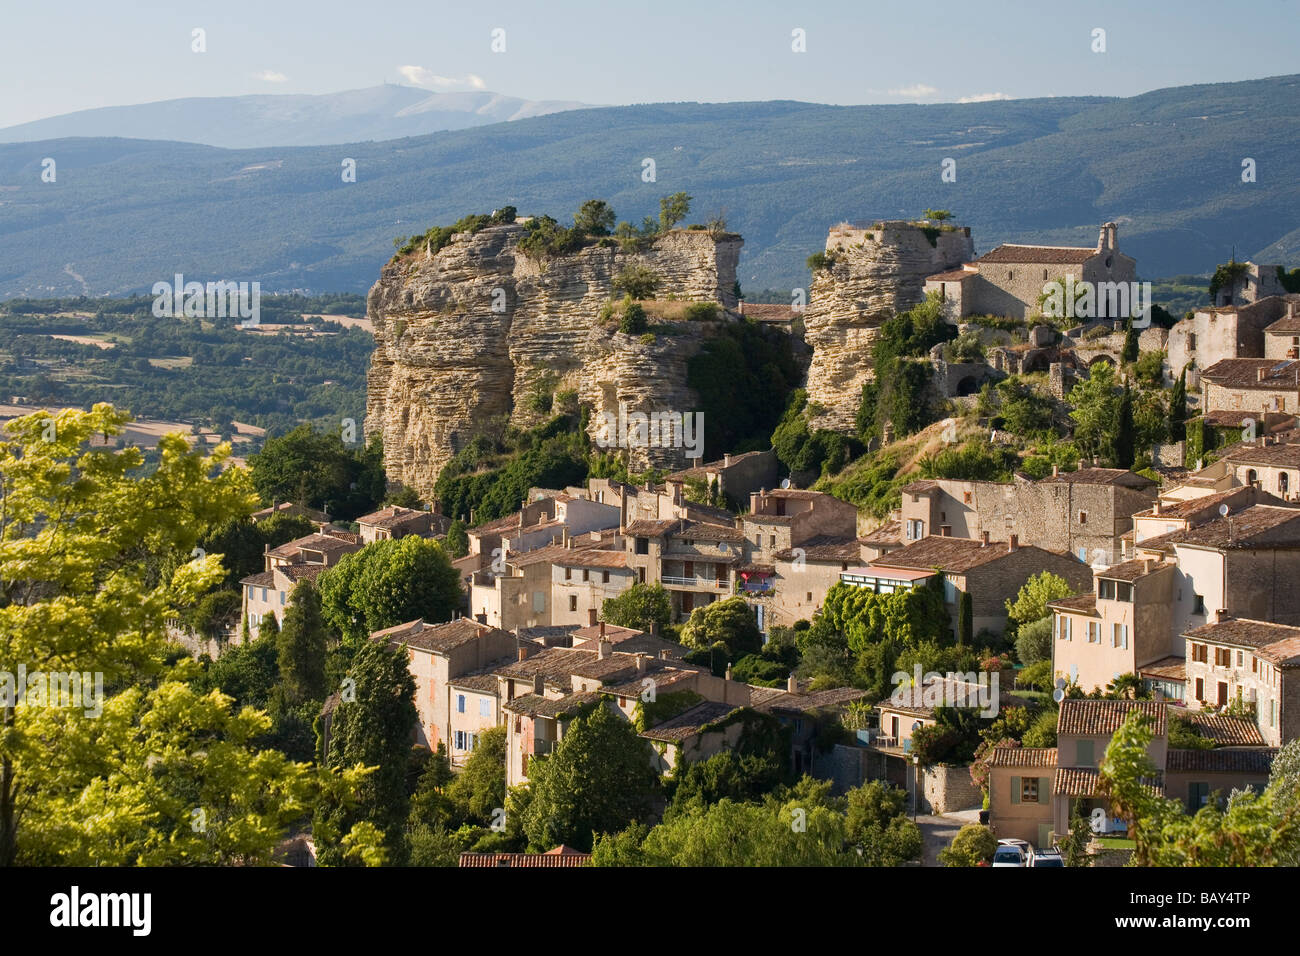 Vue sur le village Saignon dans le Lubéron, Mt. Ventoux à l'horizon, Vaucluse, Provence, France Banque D'Images